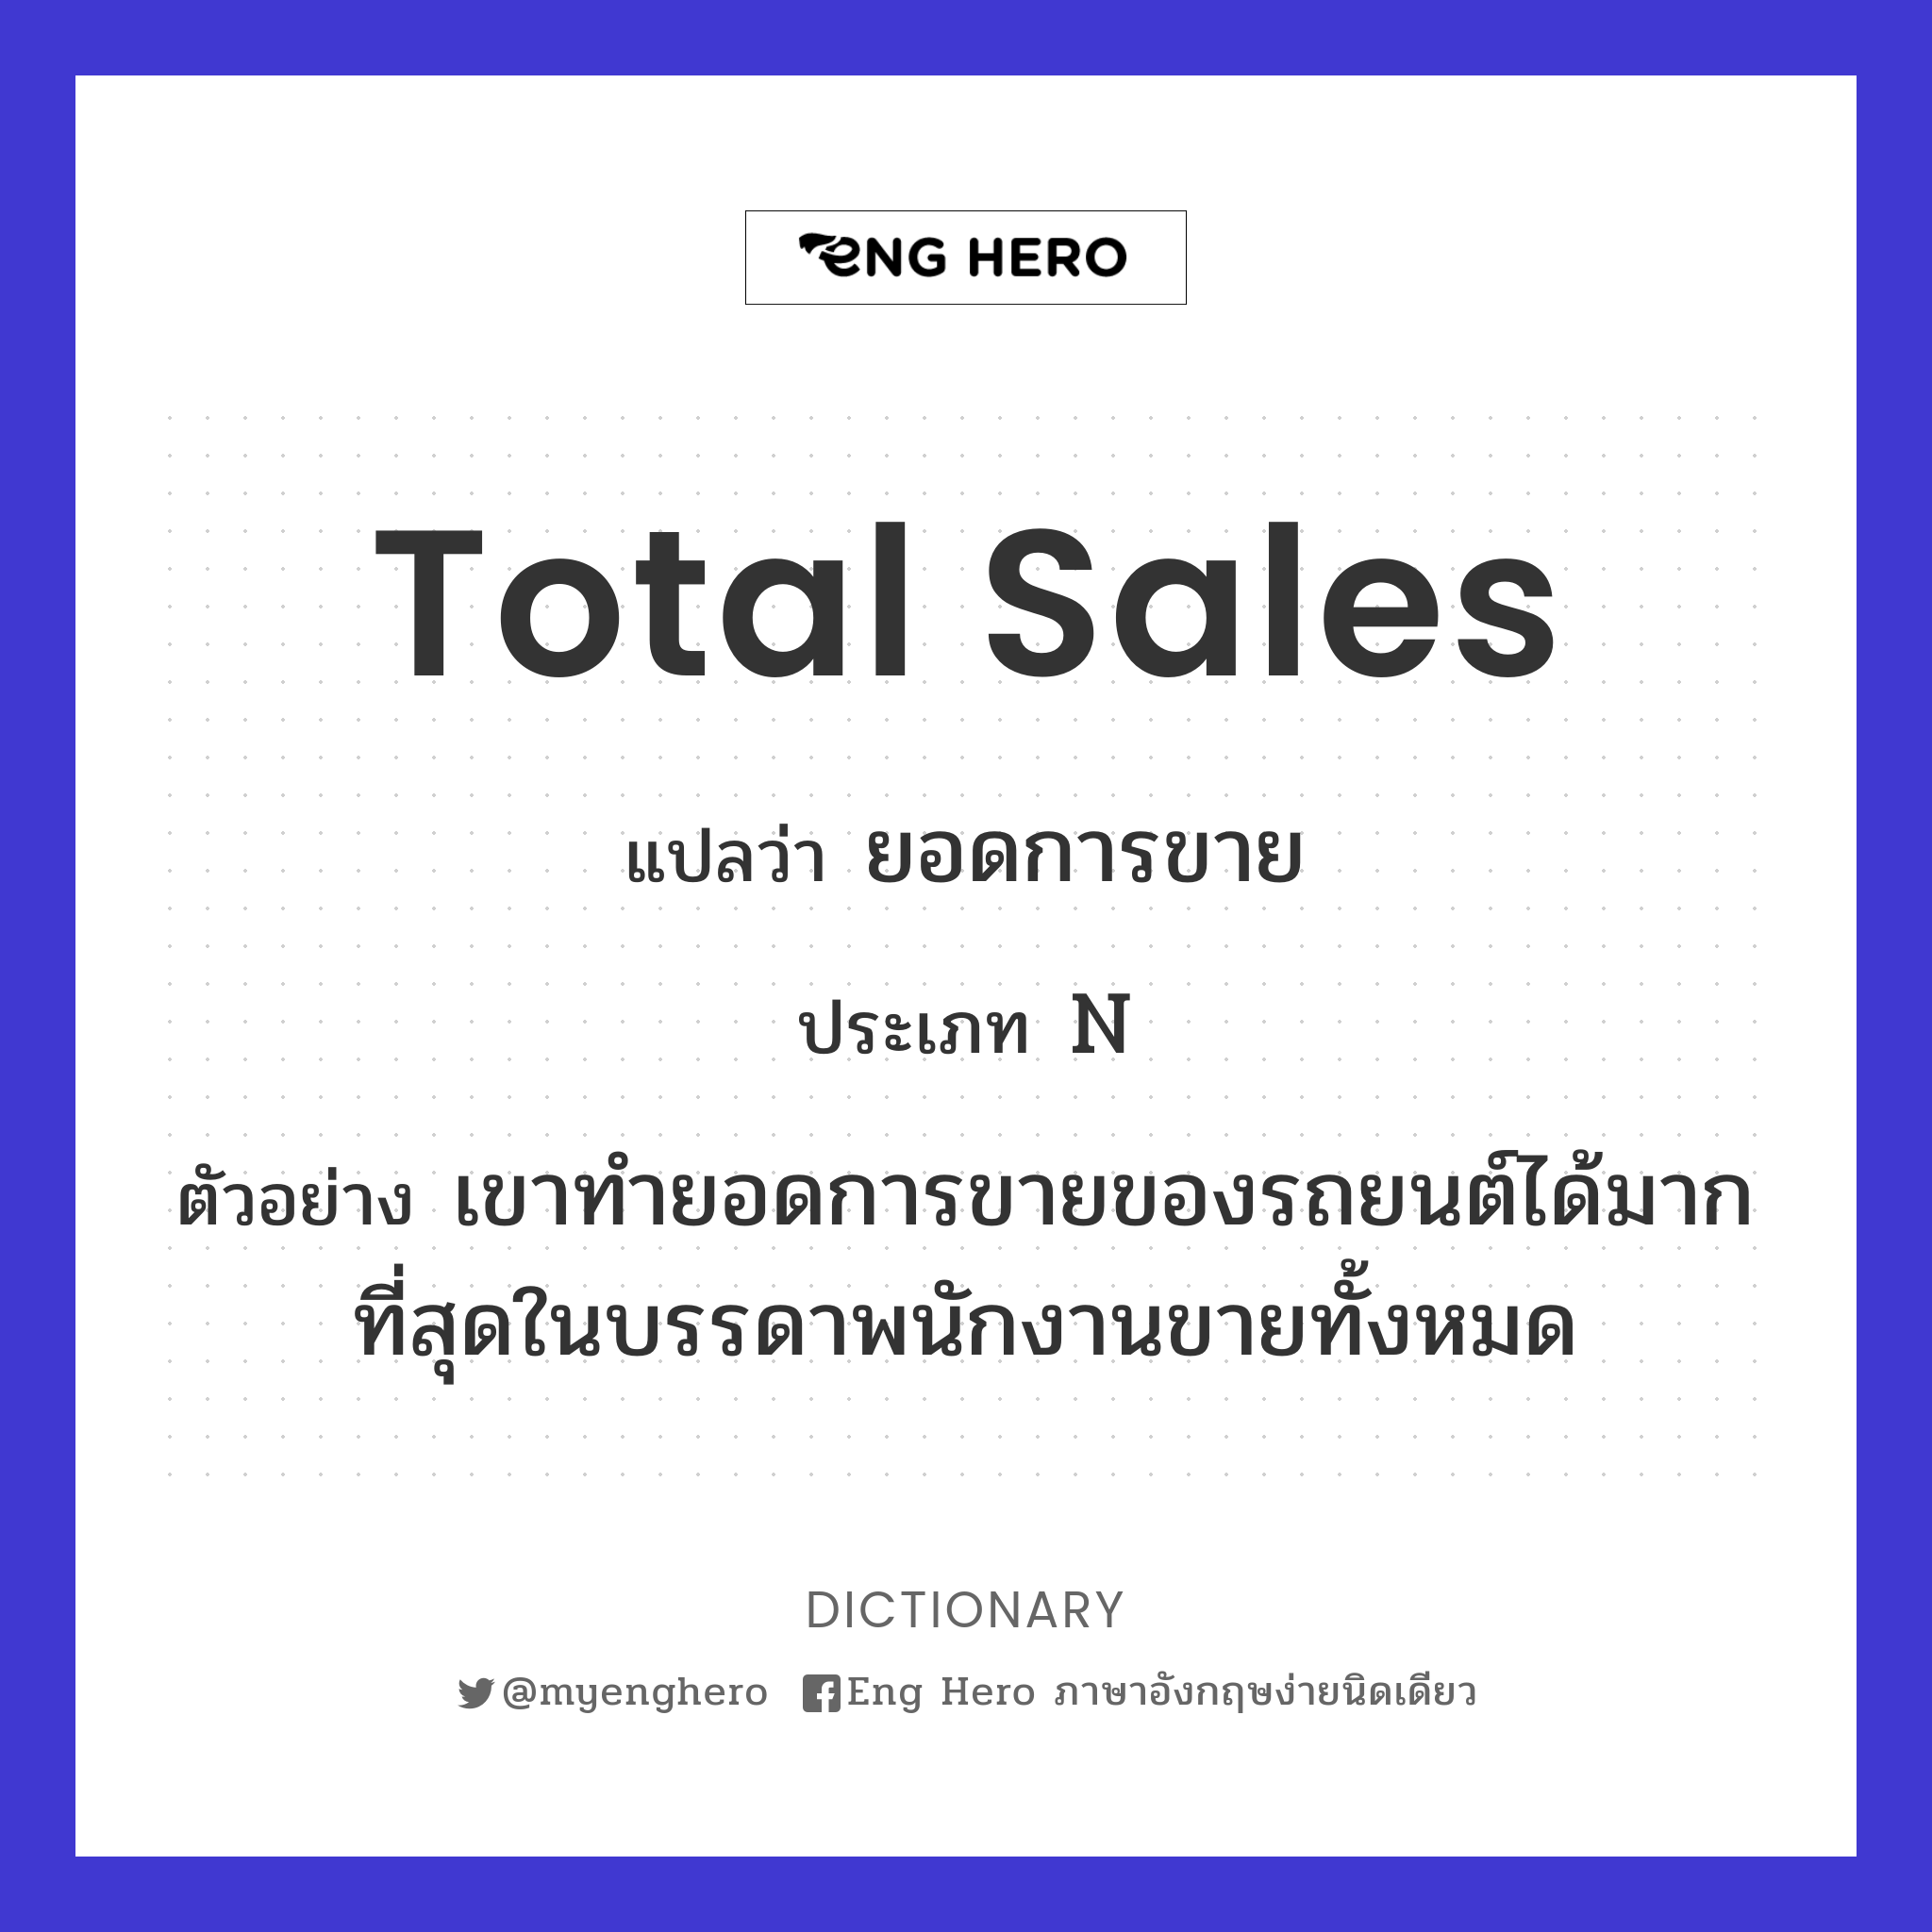 total sales